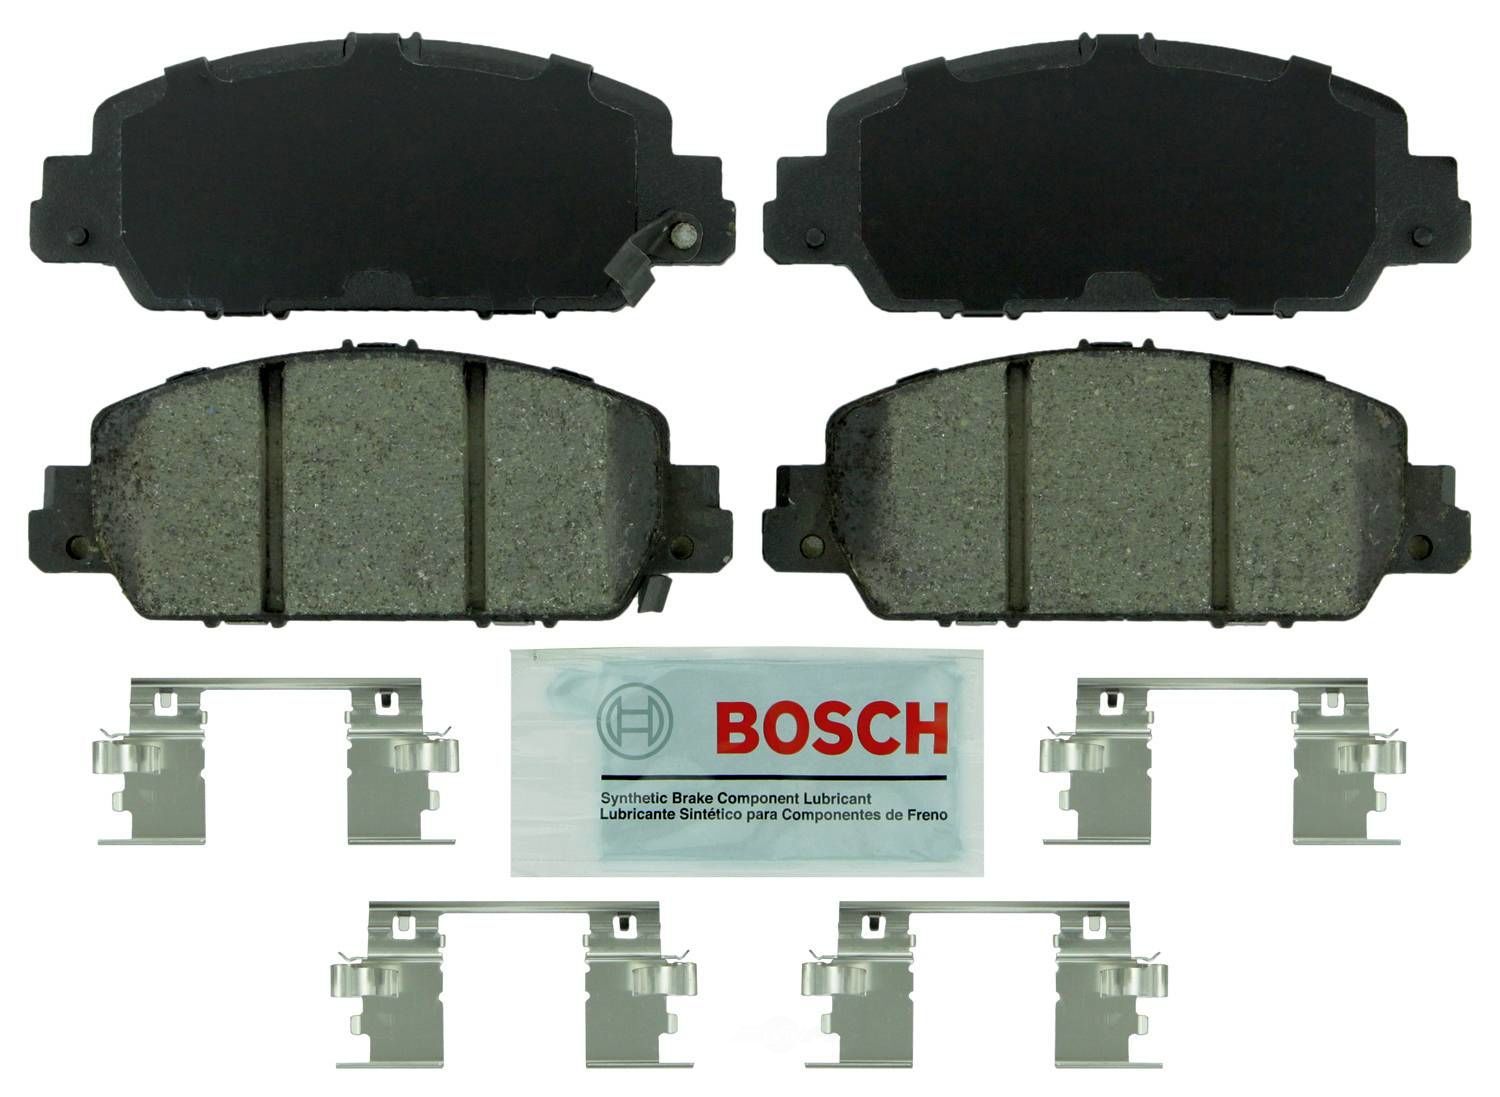 BOSCH BRAKE - Bosch Blue Ceramic Brake Pads (Front) - BQC BE1654